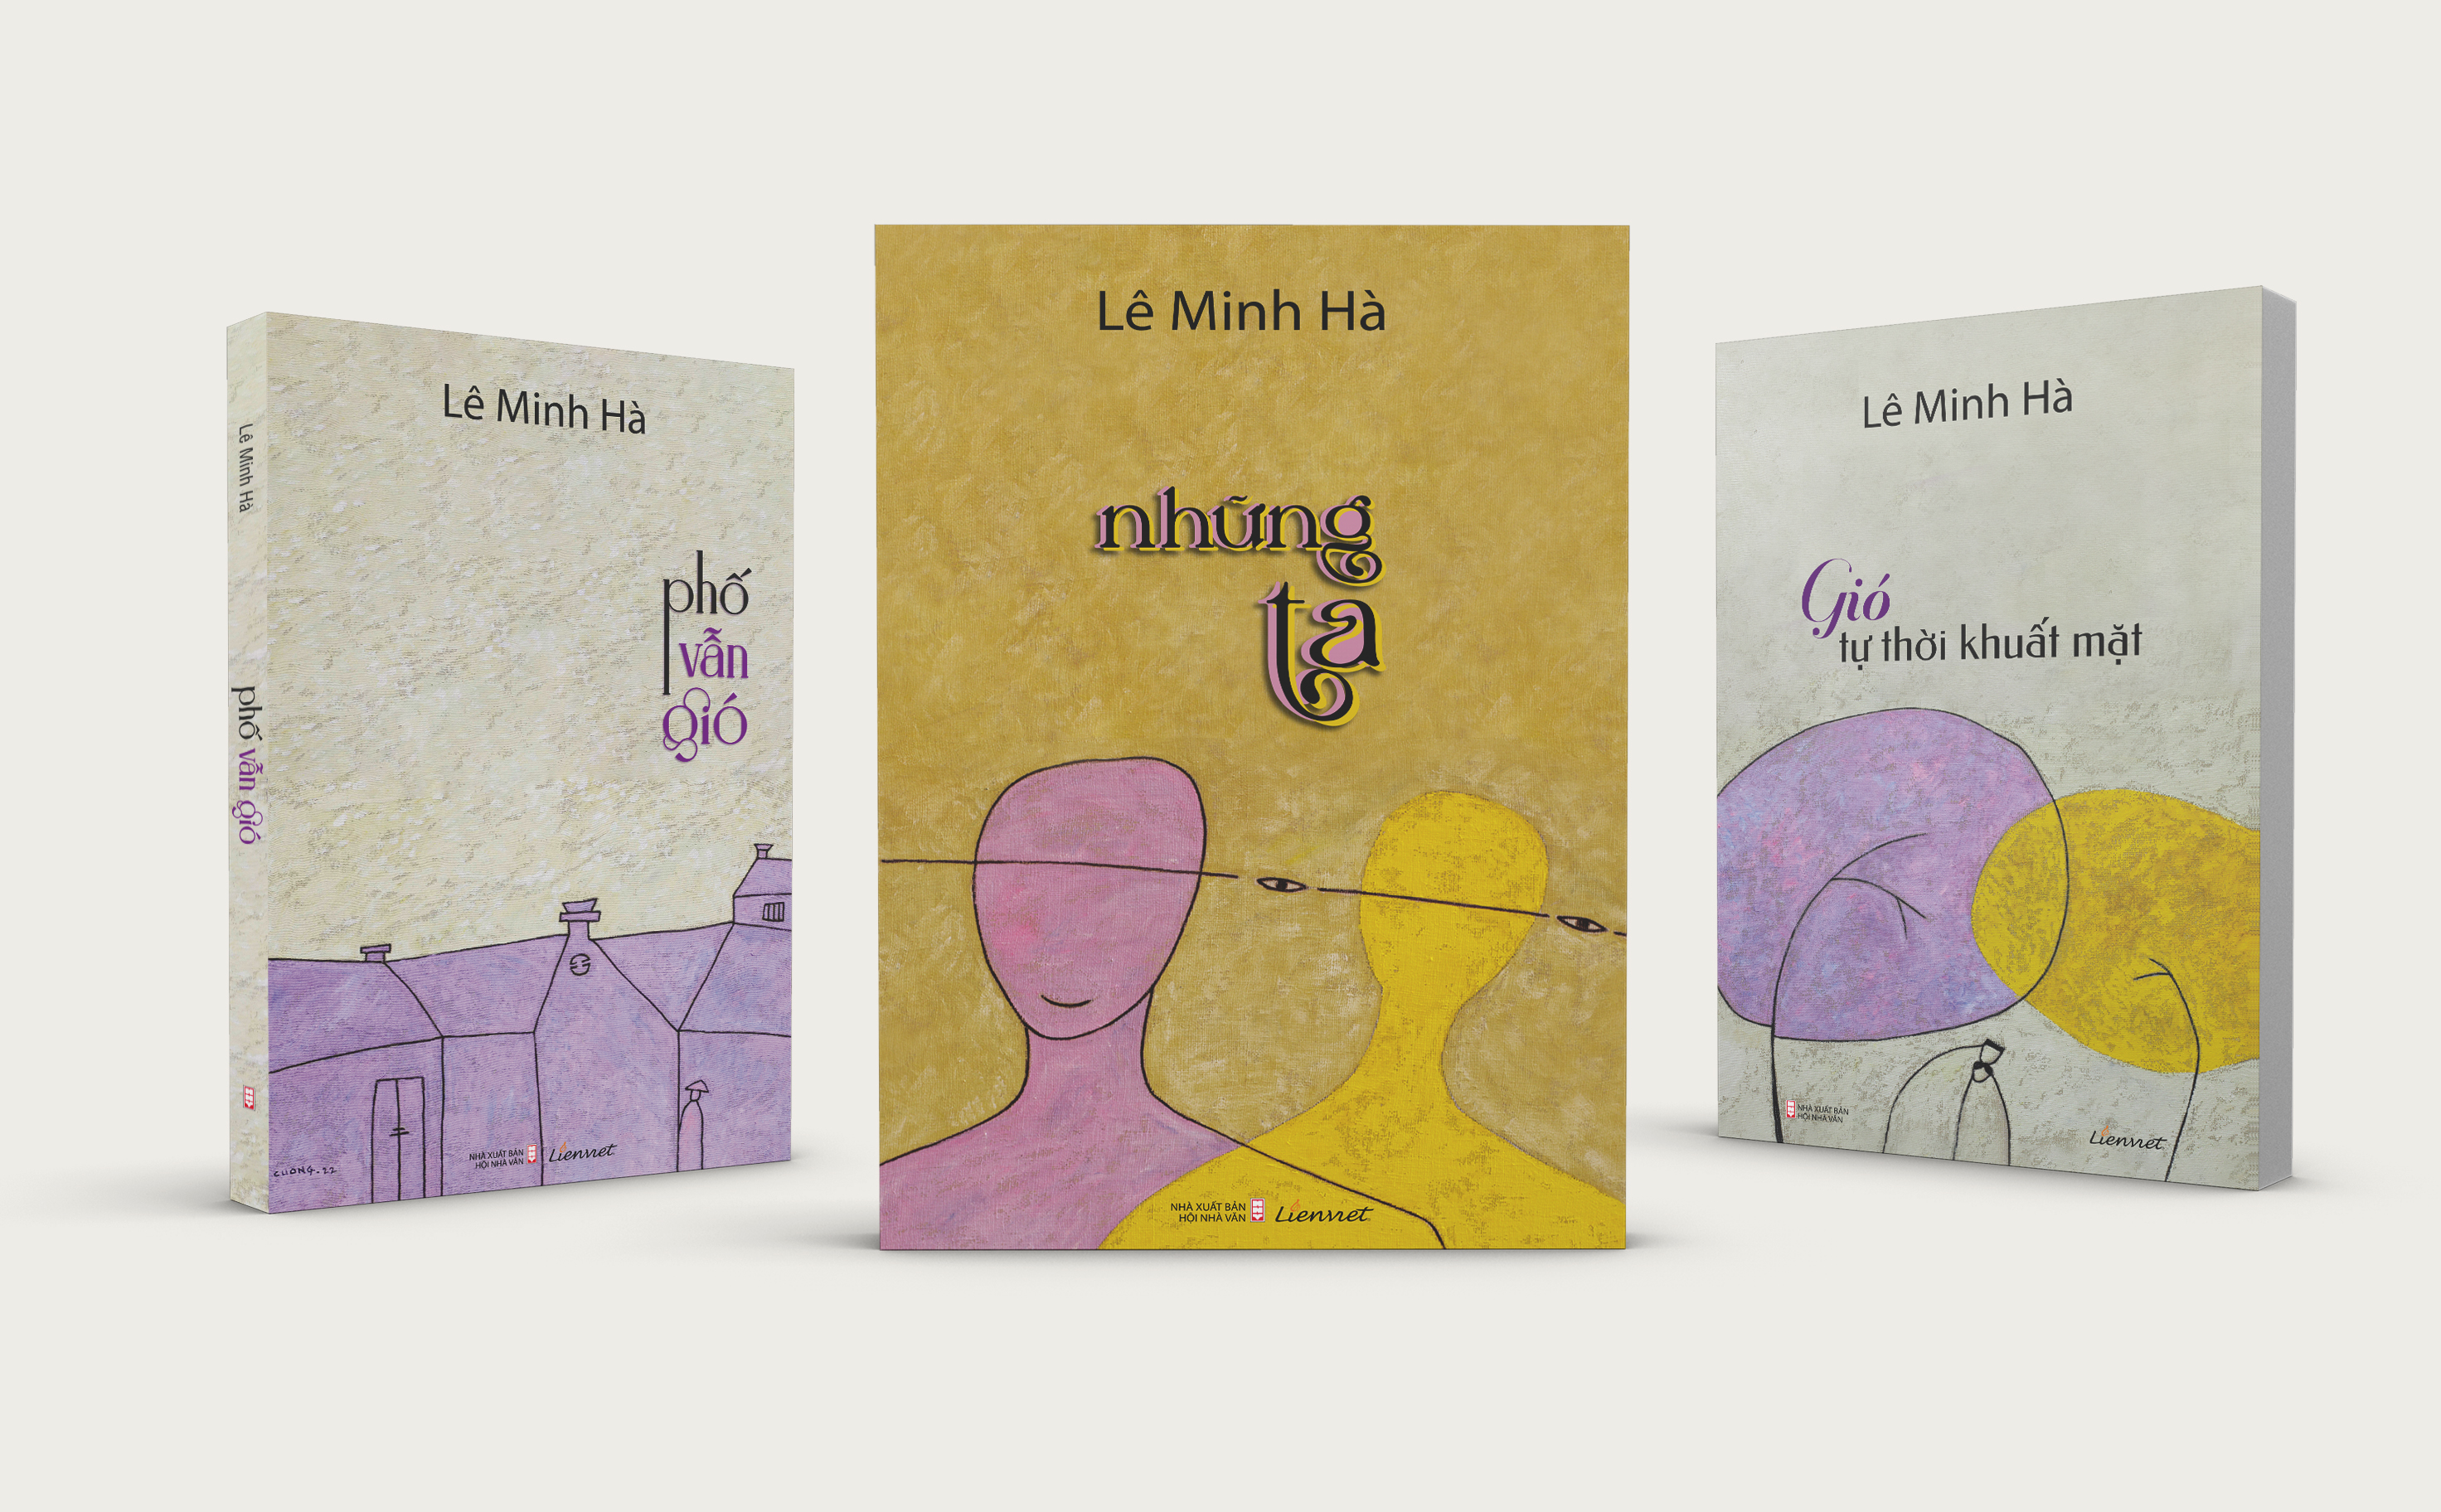 Bộ 3 tiểu thuyết Lê Minh Hà: Gió tự thời khuất mặt, Phố vẫn gió, Những ta